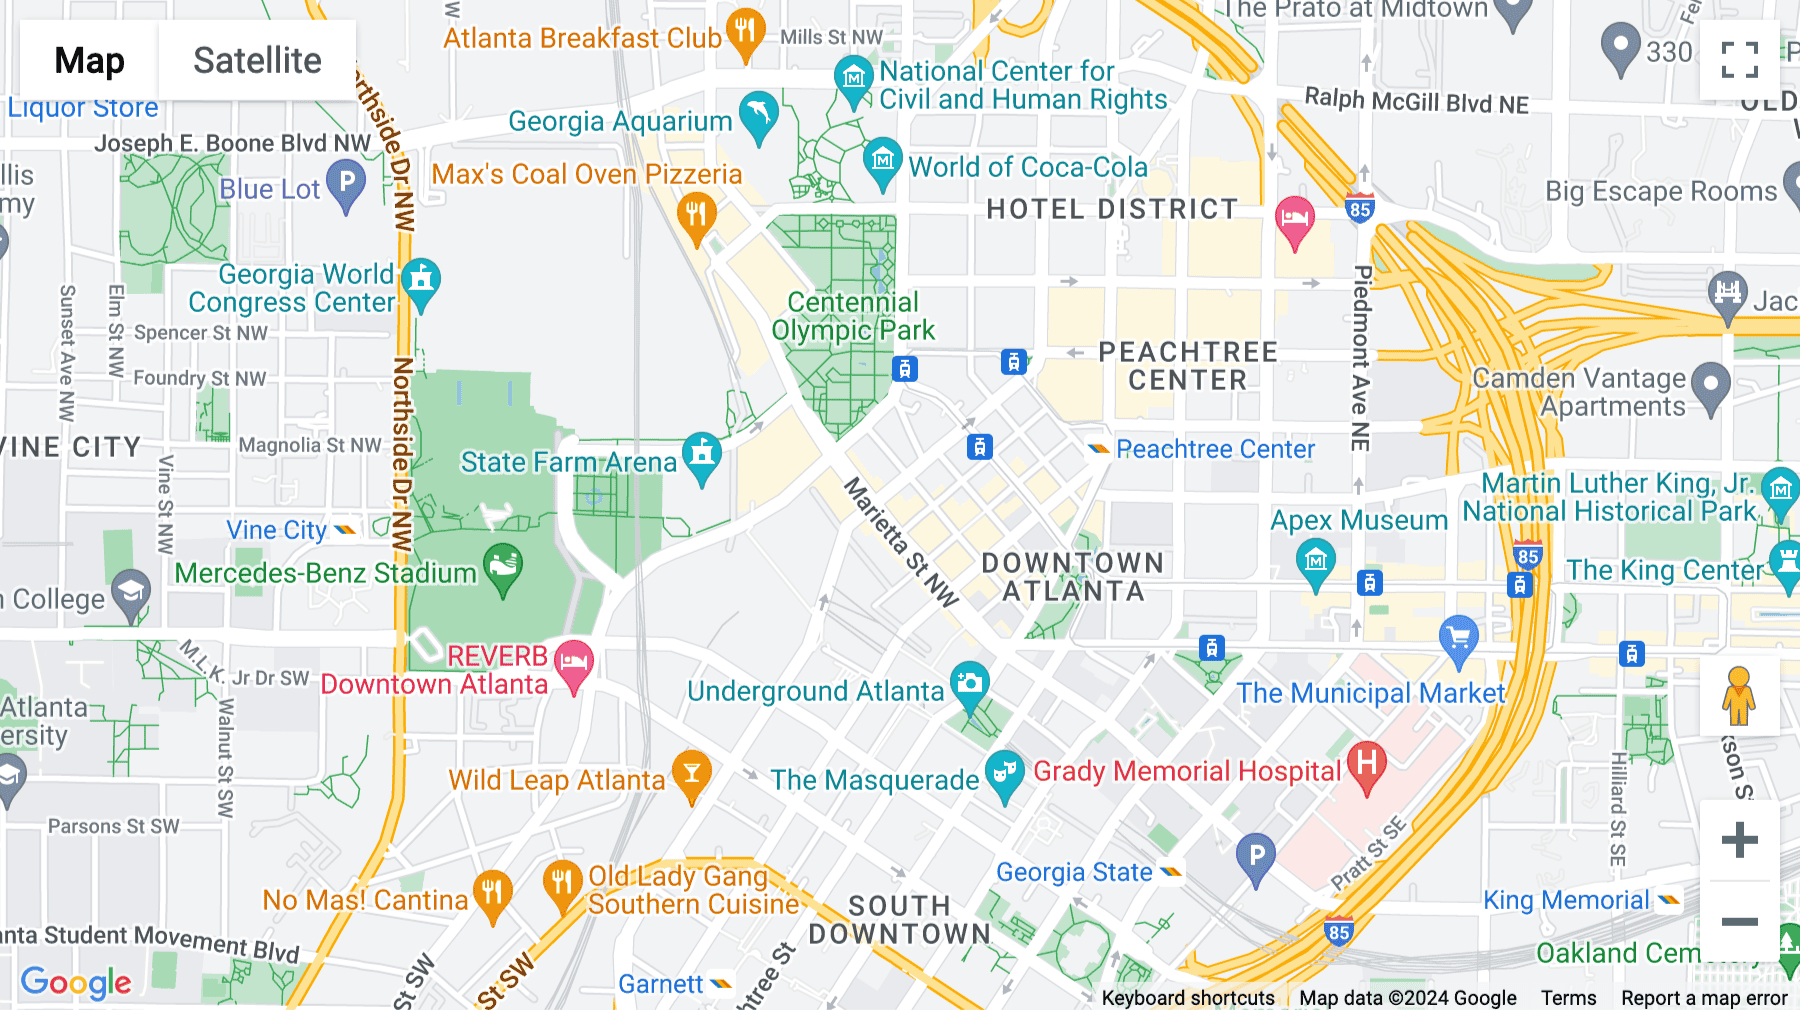 Click for interative map of 101 Marietta Street, 31st Floor, Atlanta